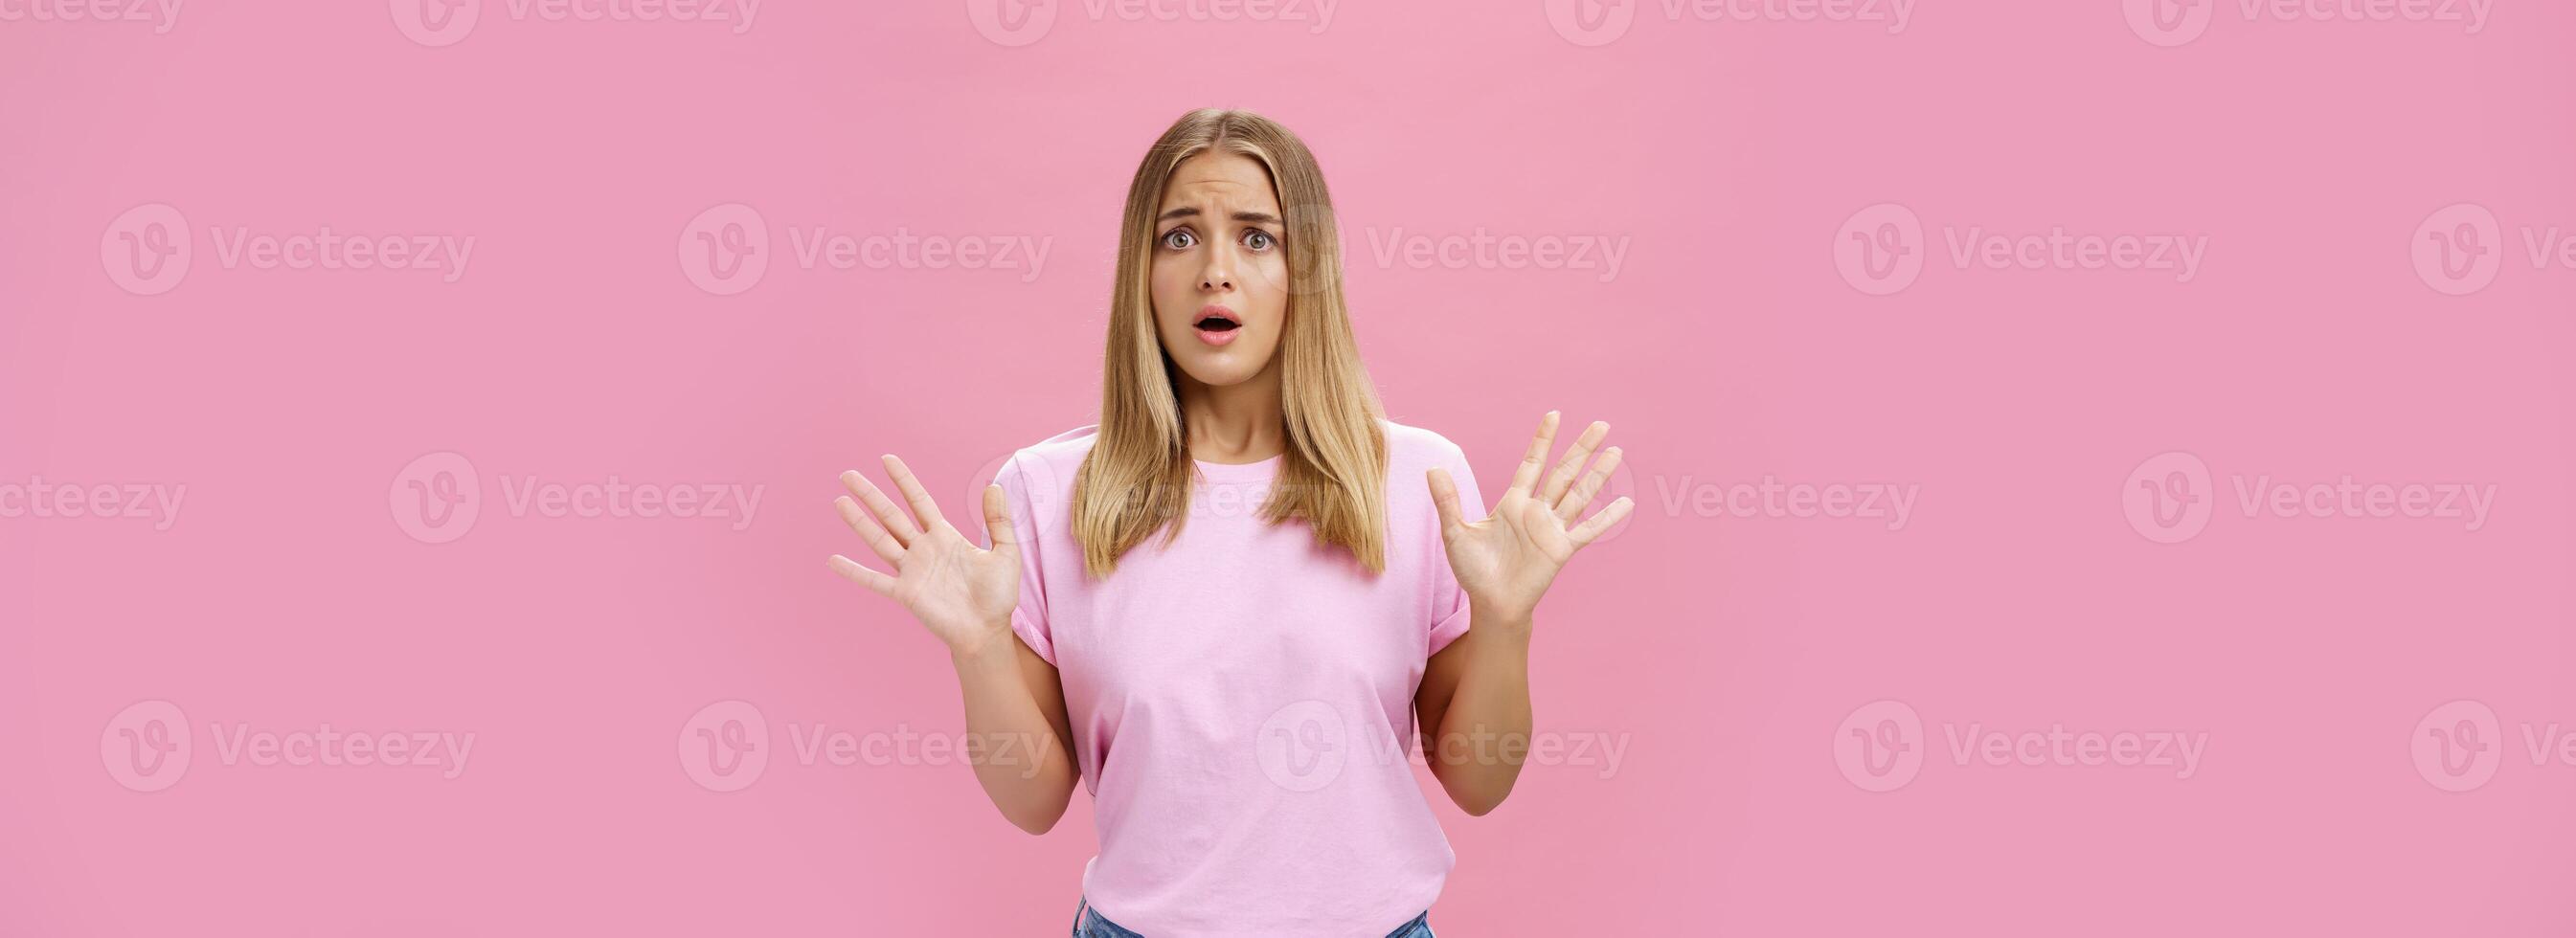 vrouw op zoek nerveus uitleggen met in paniek raken gebaren ze niet betrokken fronsen opening mond en hijgen gevoel bezorgd en bezorgd golvend handen over- borst poseren tegen roze muur foto